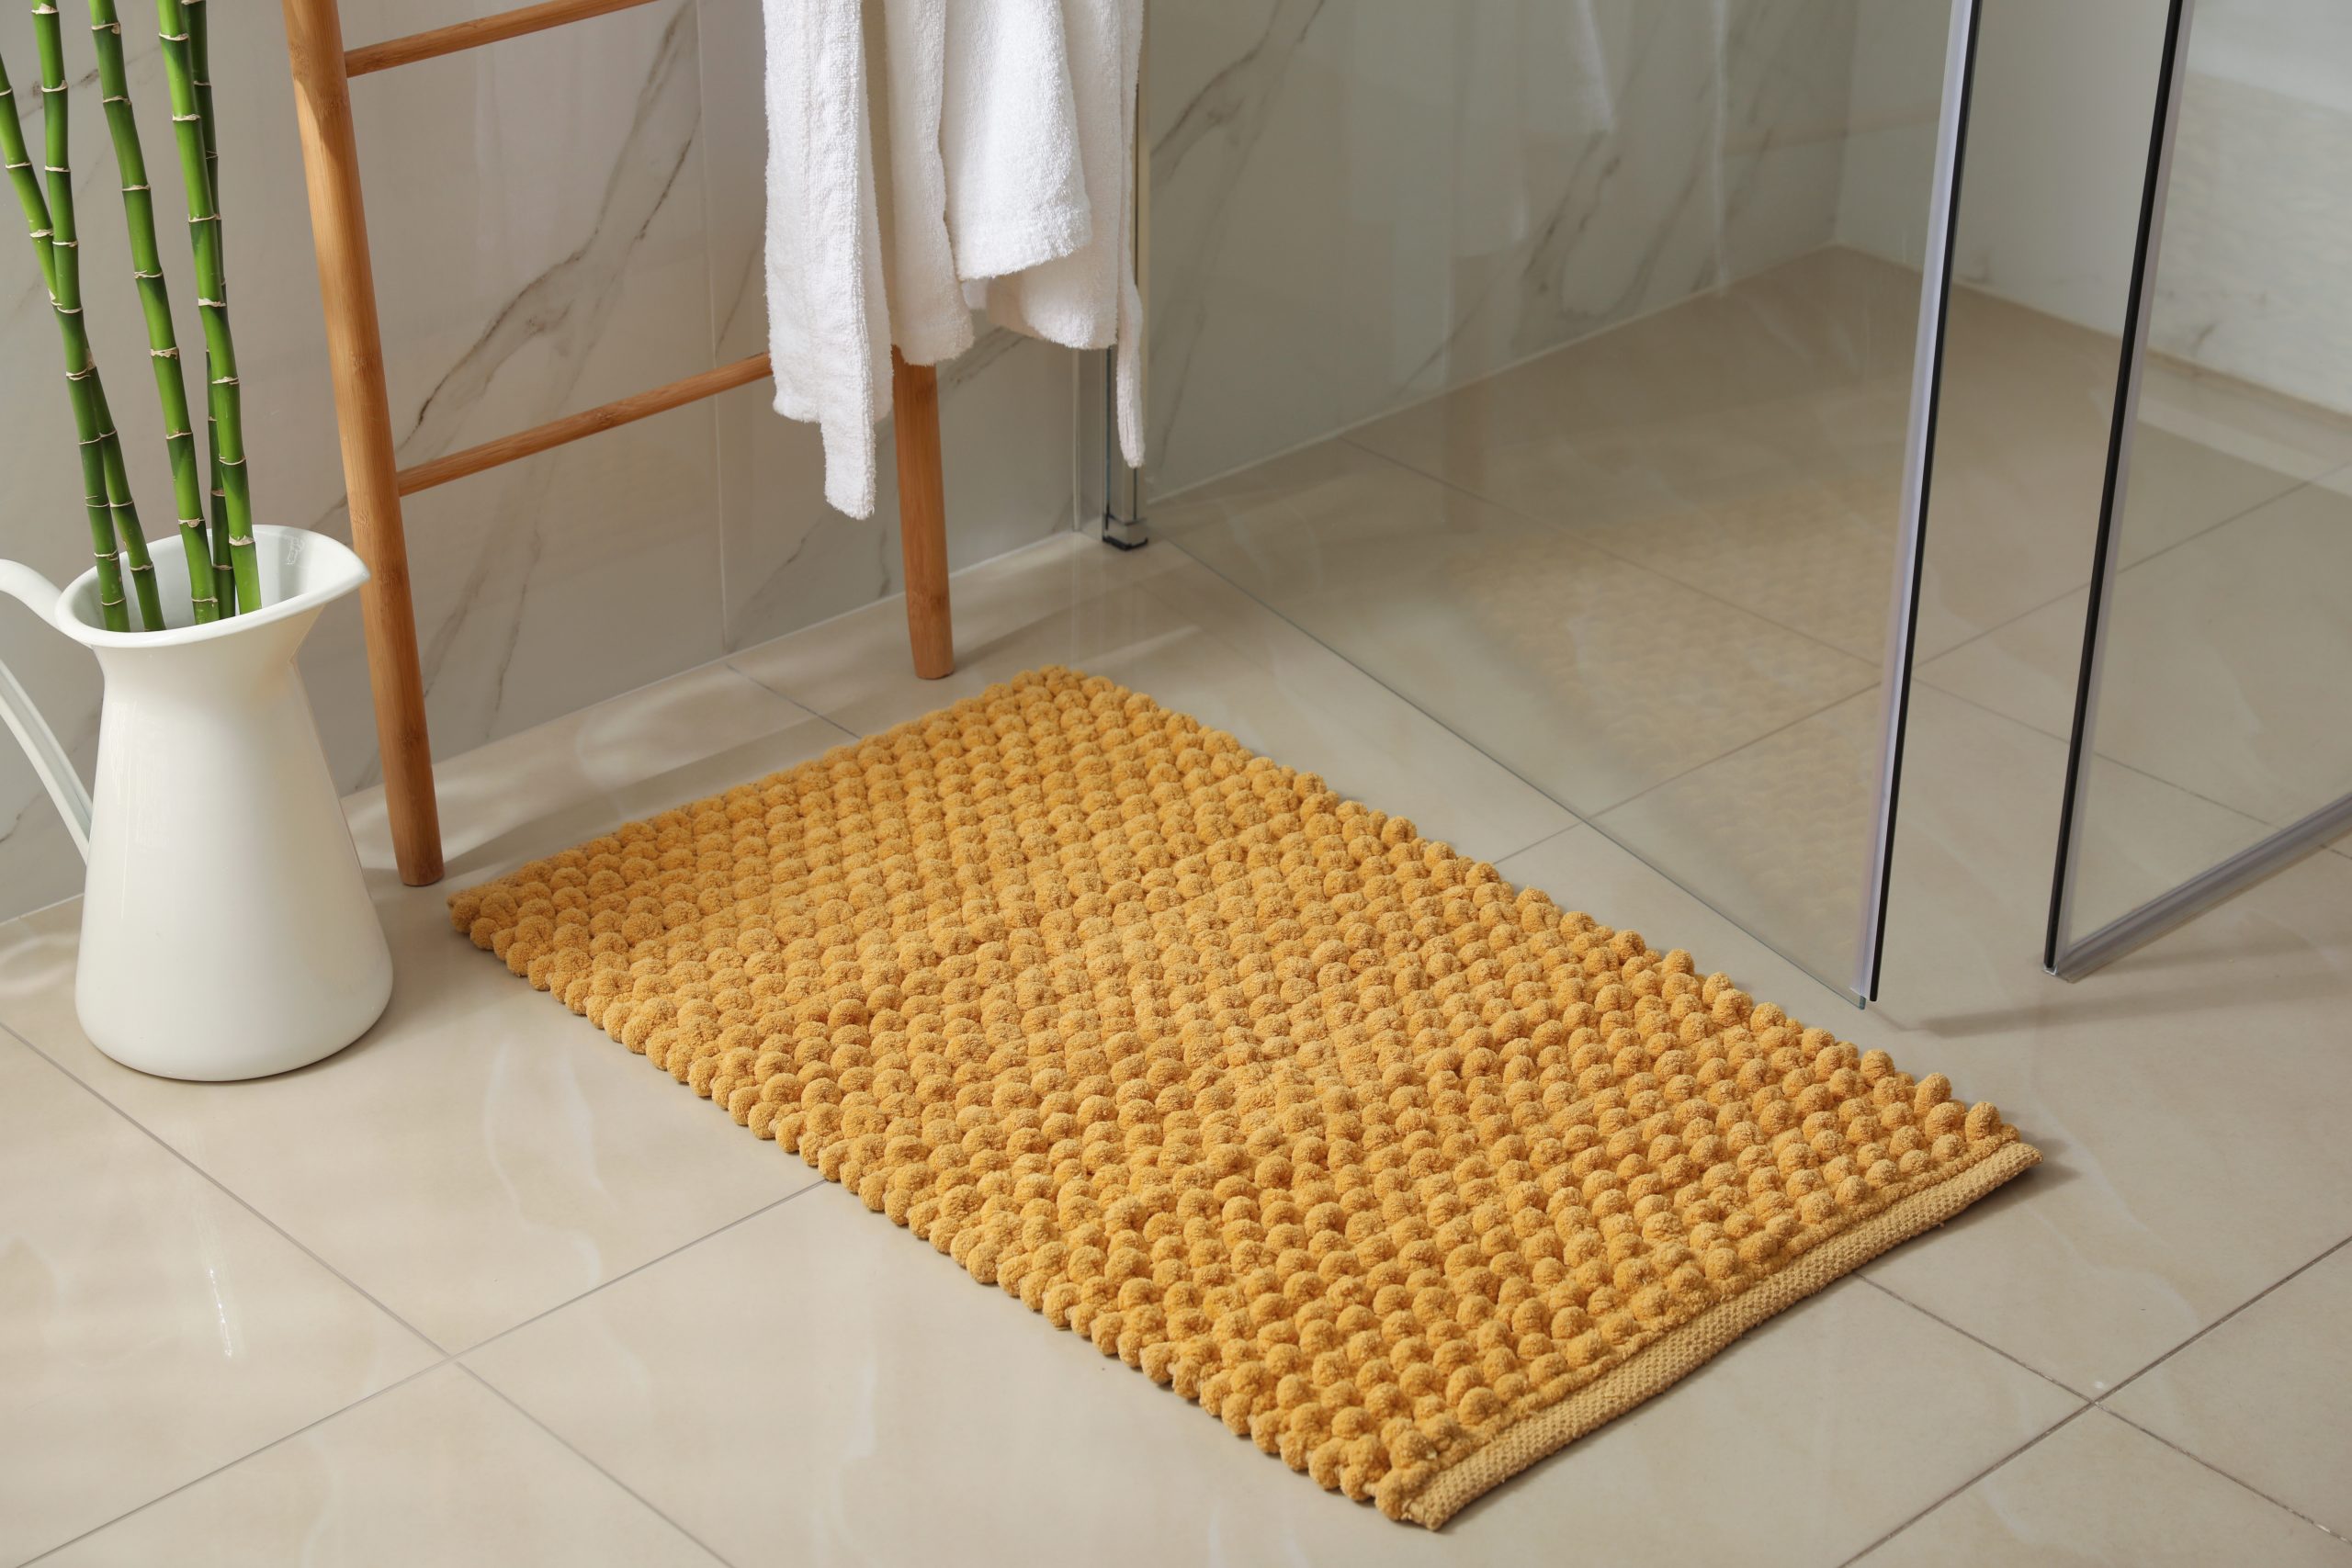 Finding the Best Non-Slip Bath Mat for Seniors